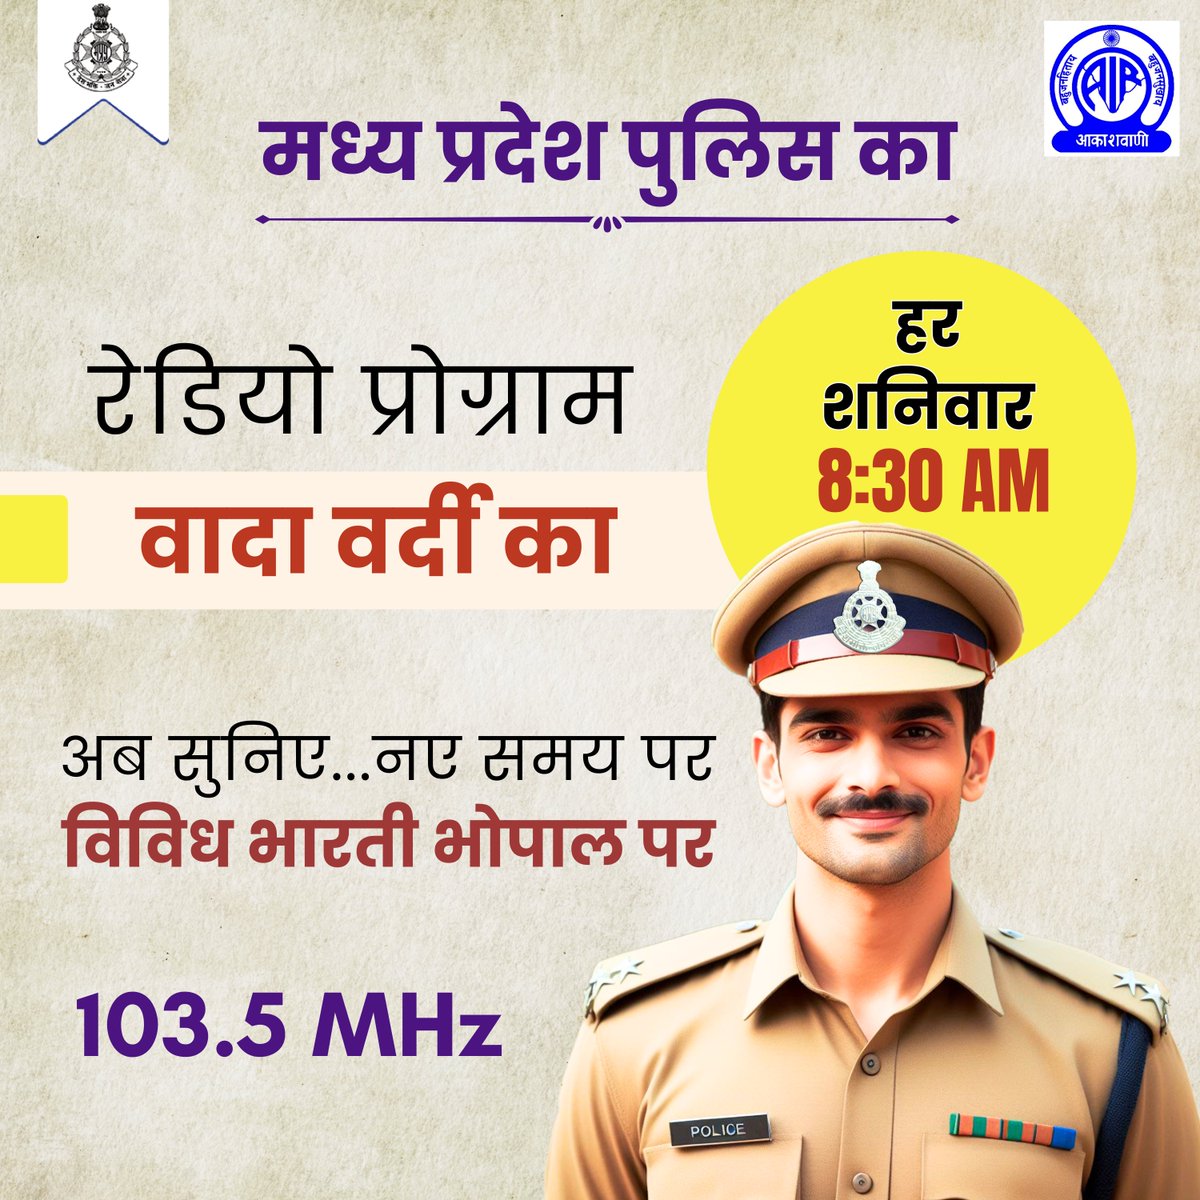 📷 अब हर शनिवार, सुबह 8:30 बजे, सुनिए मध्य प्रदेश पुलिस का रेडियो प्रोग्राम, 'वादा वर्दी का'  📷📷  सिर्फ और सिर्फ विविध भारती भोपाल पर, सुनने के लिए 103.5 MHz पर ट्यून करना न भूलें।

#MPPolice #RadioShow #Podcast